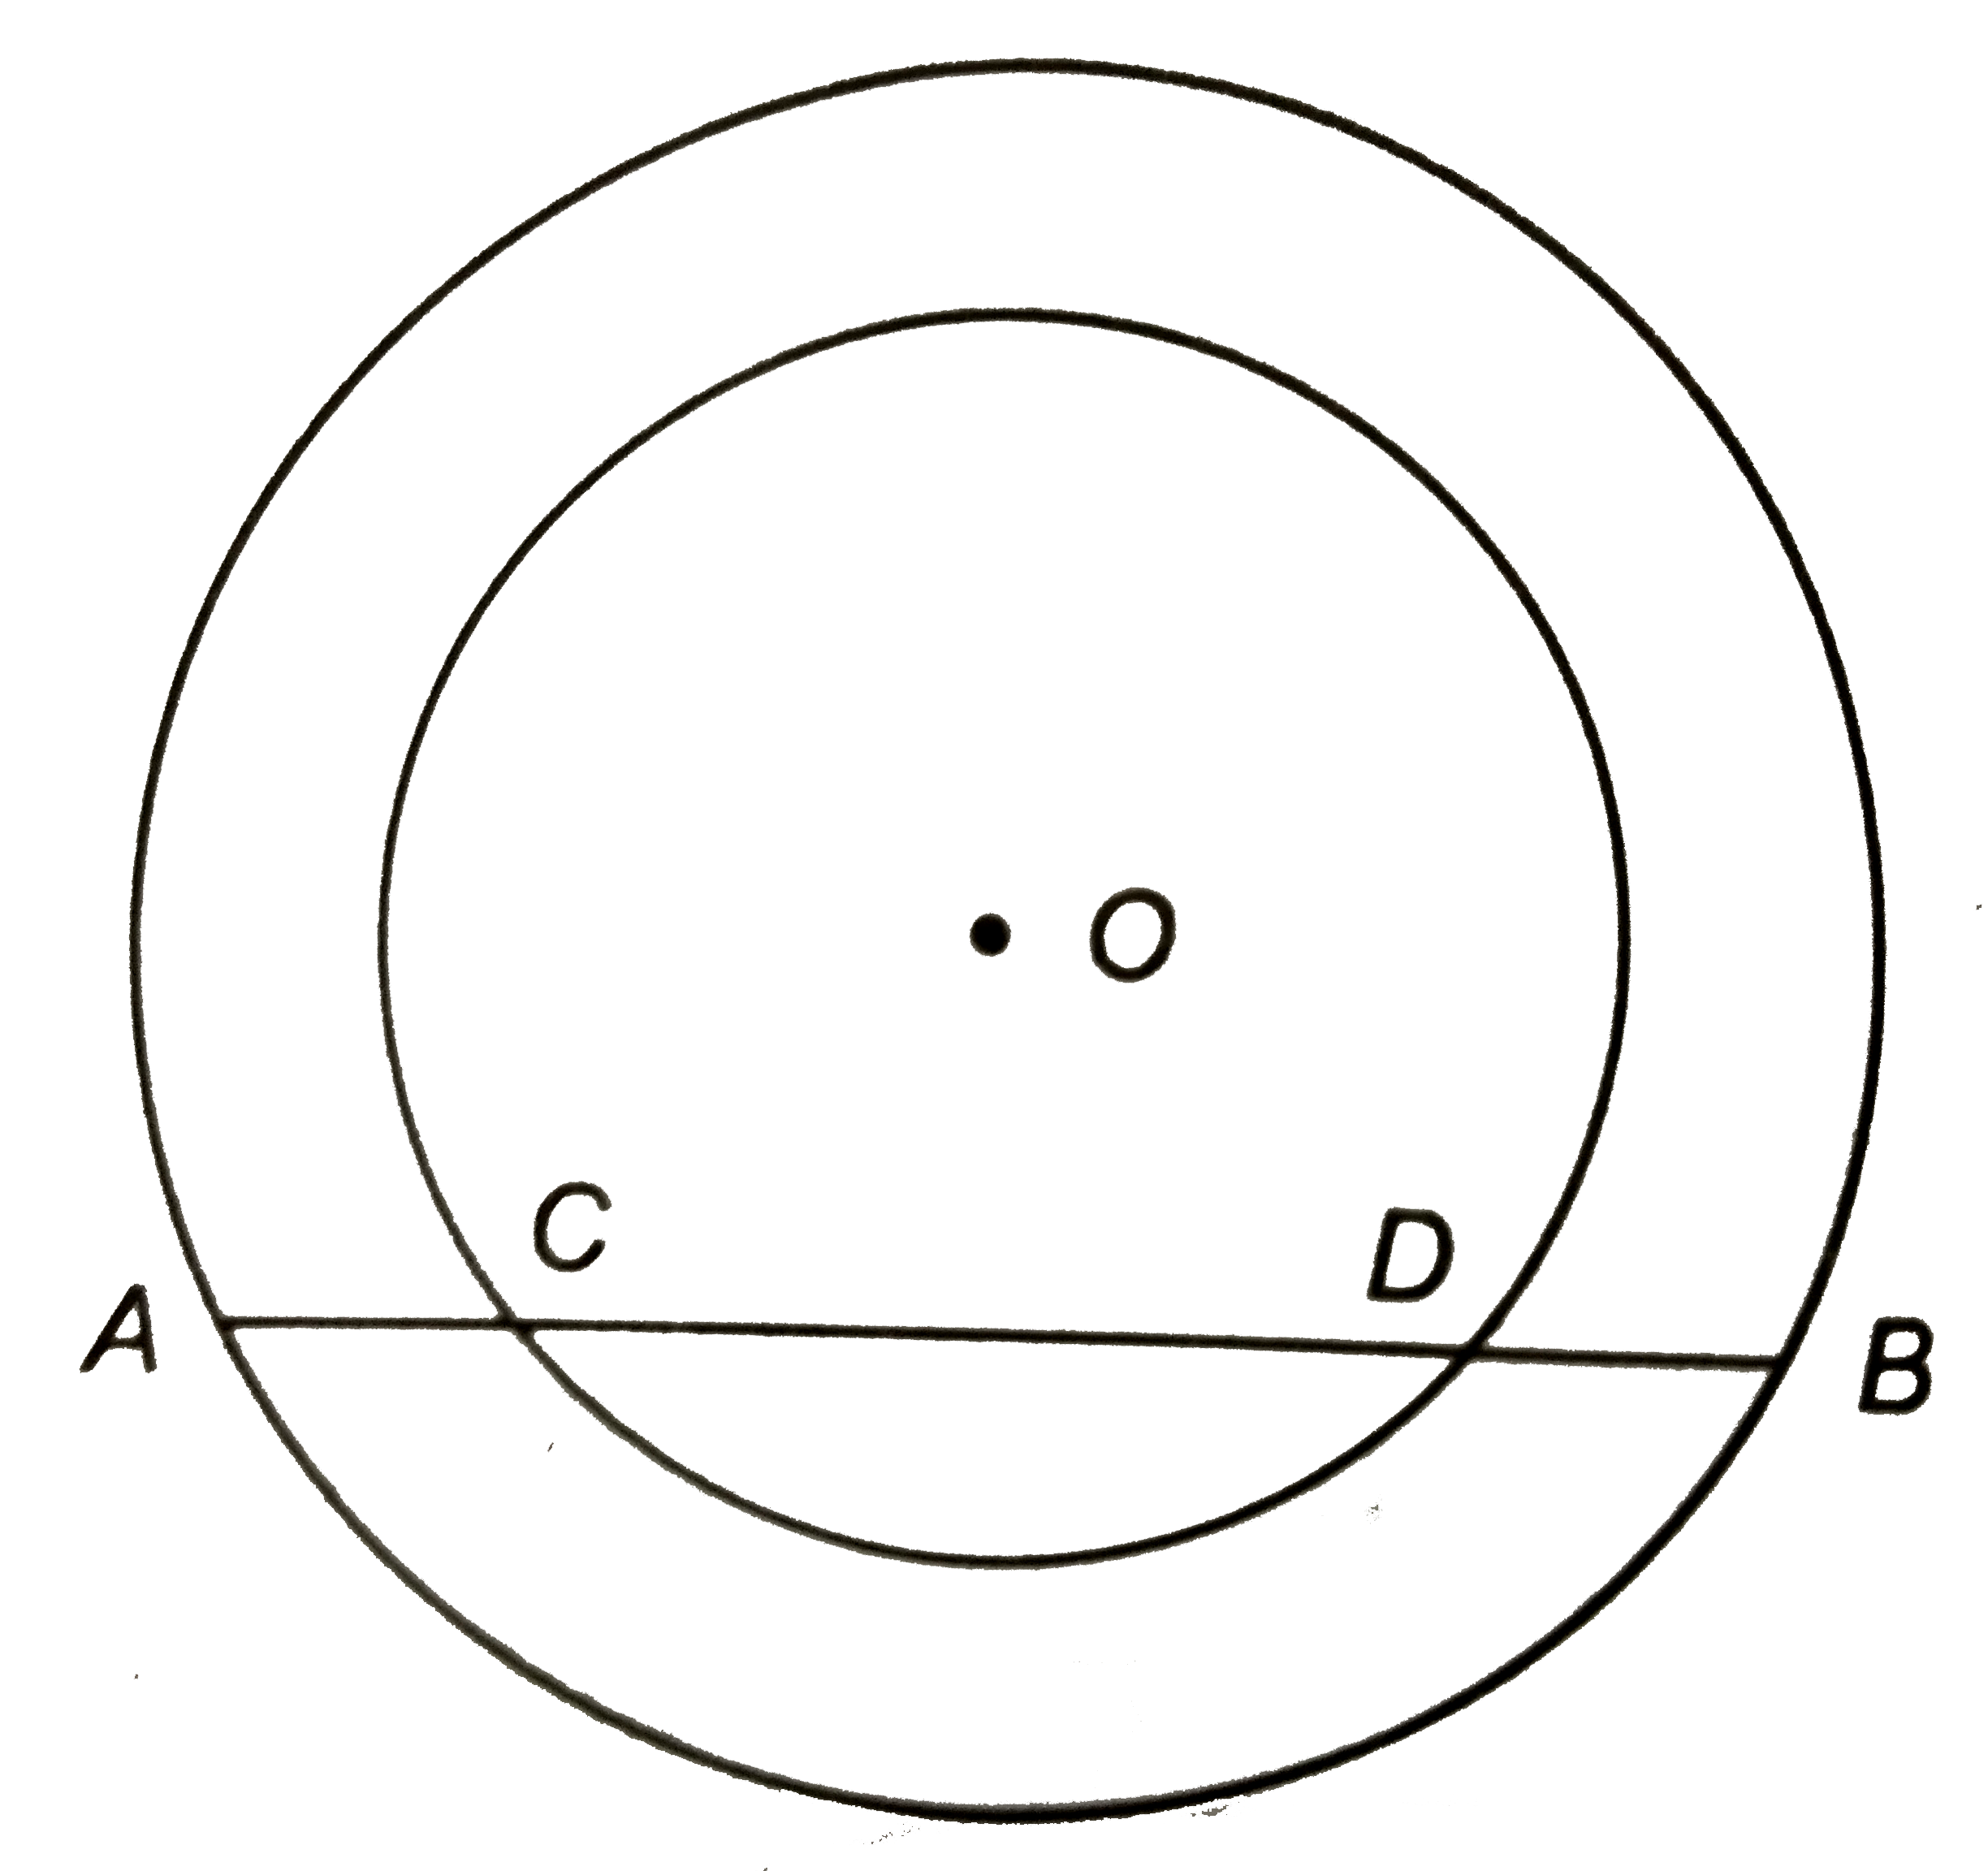 संलग्न चित्र में 'O' केंद्र के दो संकेन्द्रीय वृत्त हैं | बड़े वृत्त की एक जीवा AB छोटे वृत्त को C और D पर काटती है |   (i) AC : BD ज्ञात कीजिए |   (ii) यदि AC = 2 सेमी, तो BD की लम्बाई क्या होगी ?